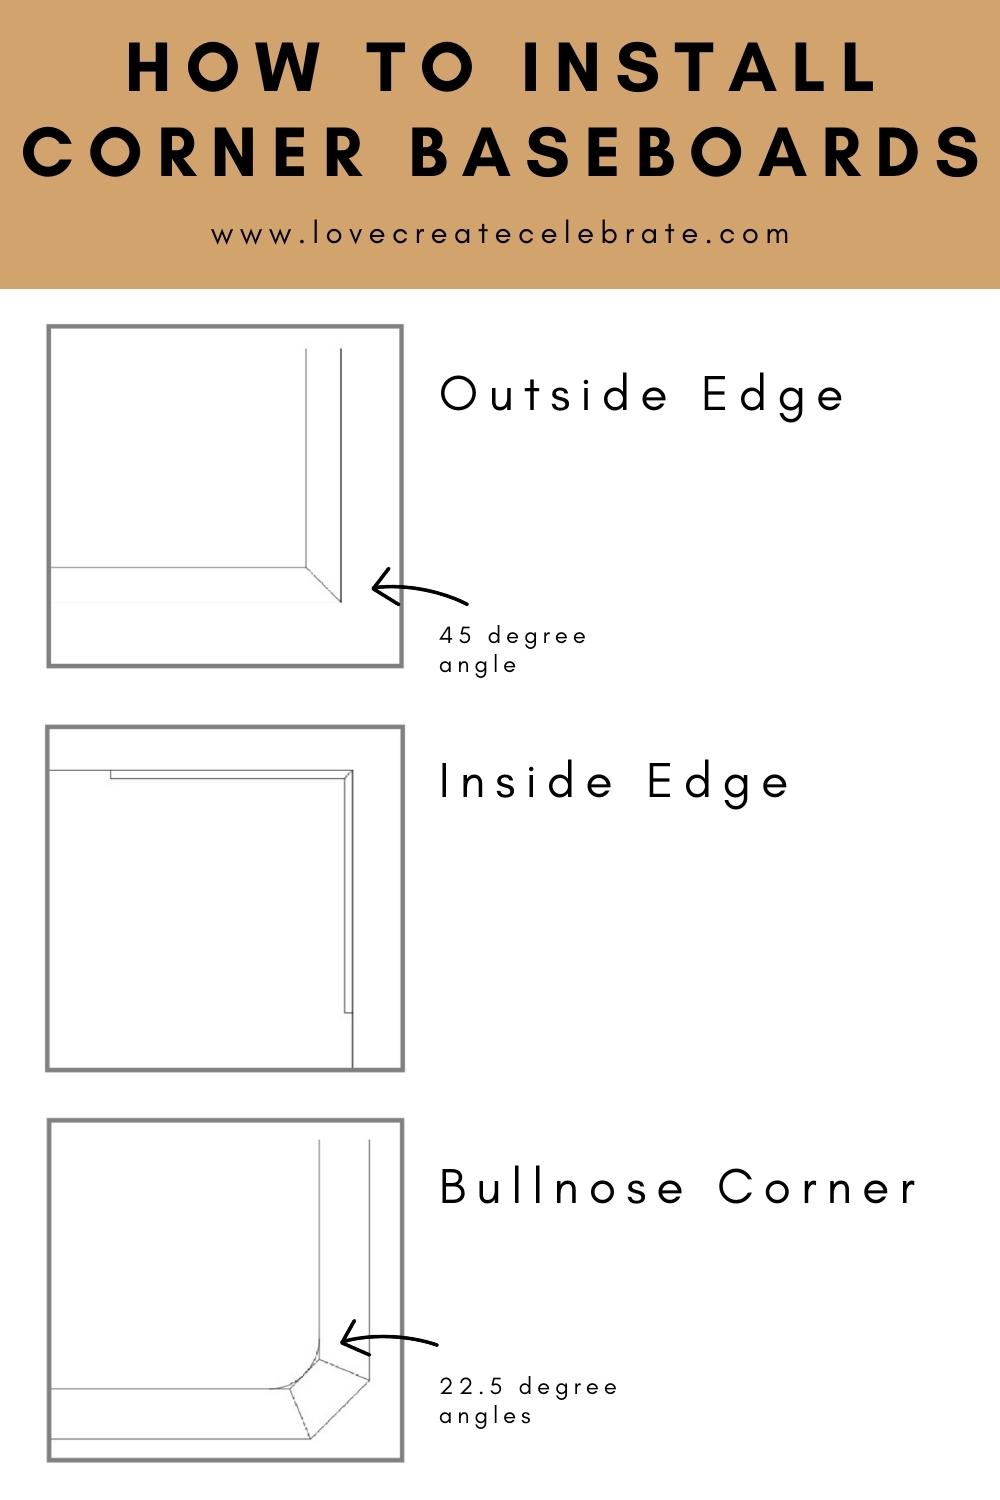 PIN image of baseboard corner details